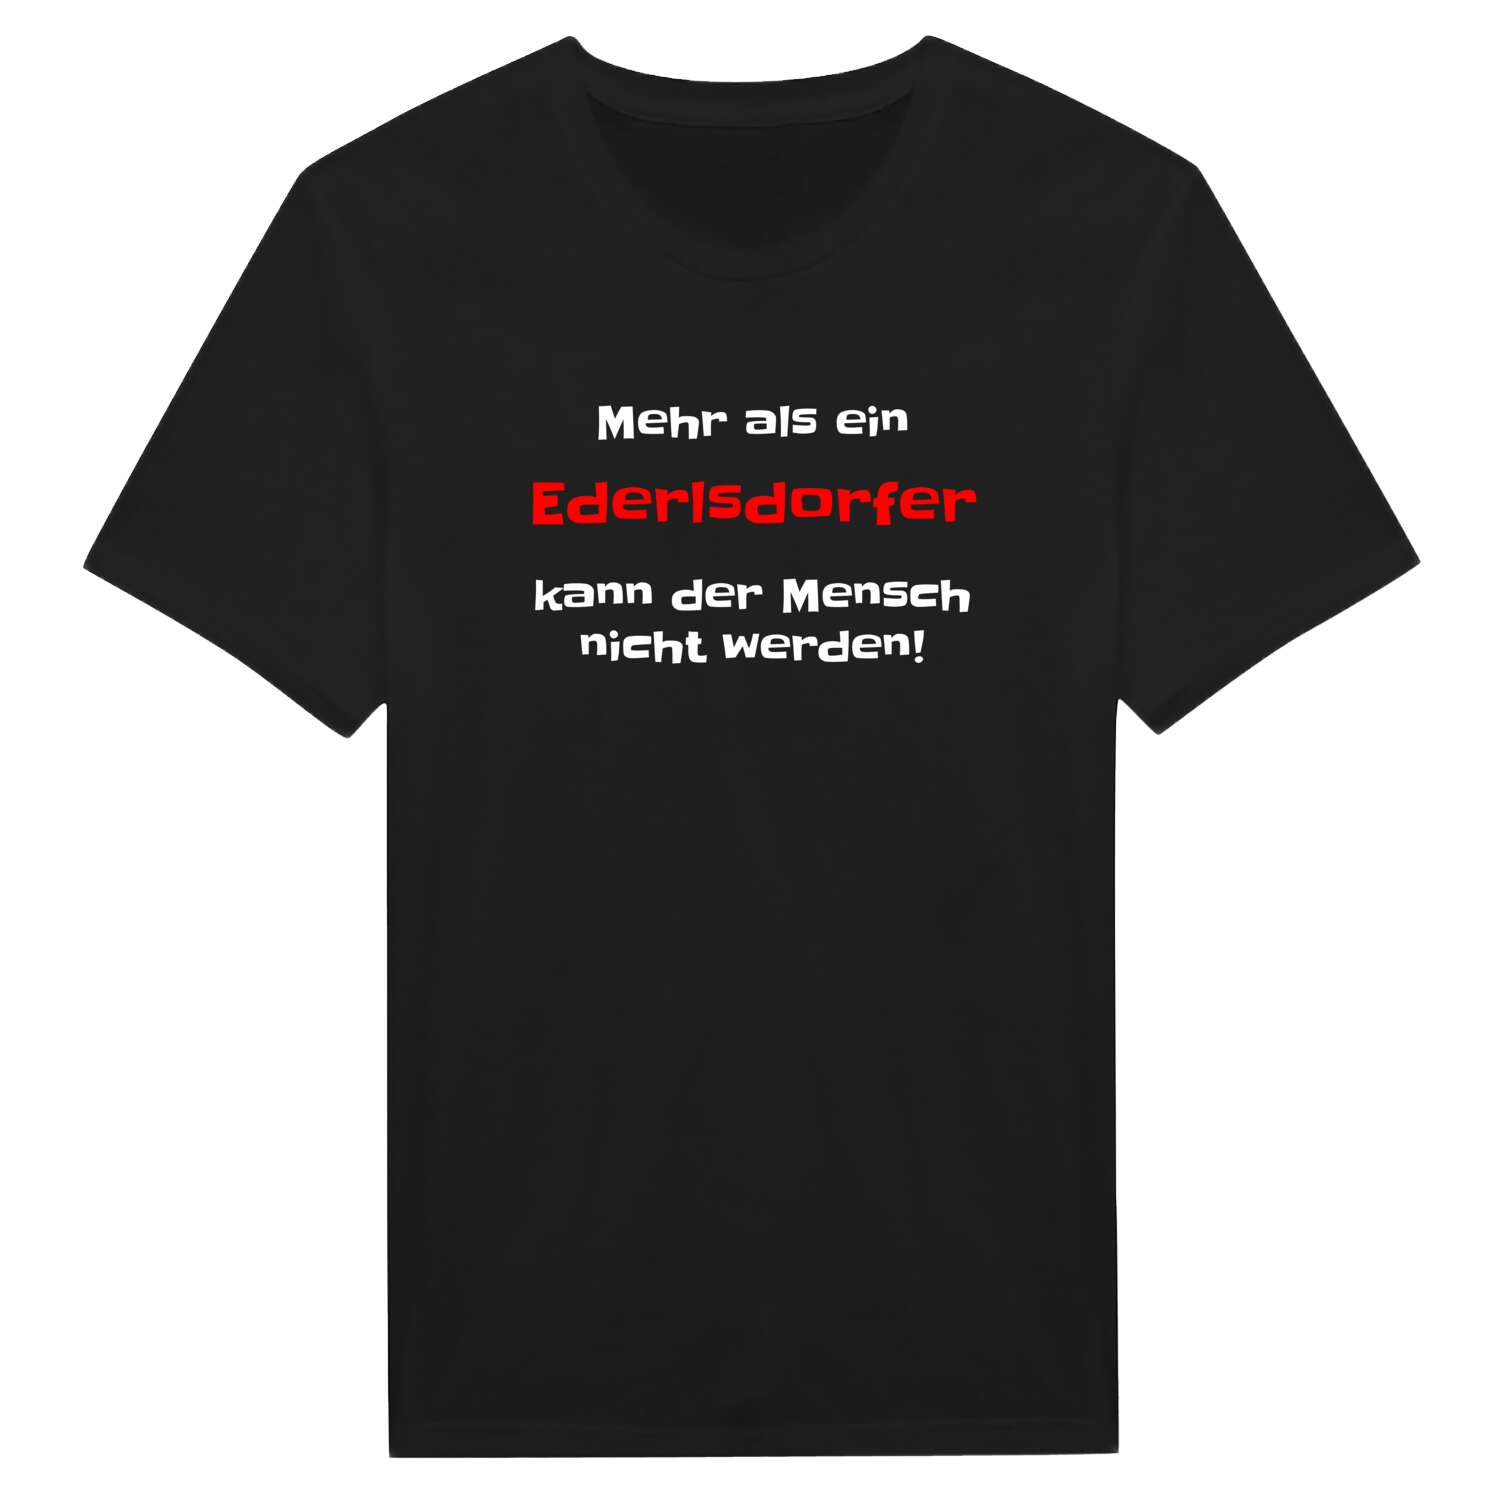 Ederlsdorf T-Shirt »Mehr als ein«